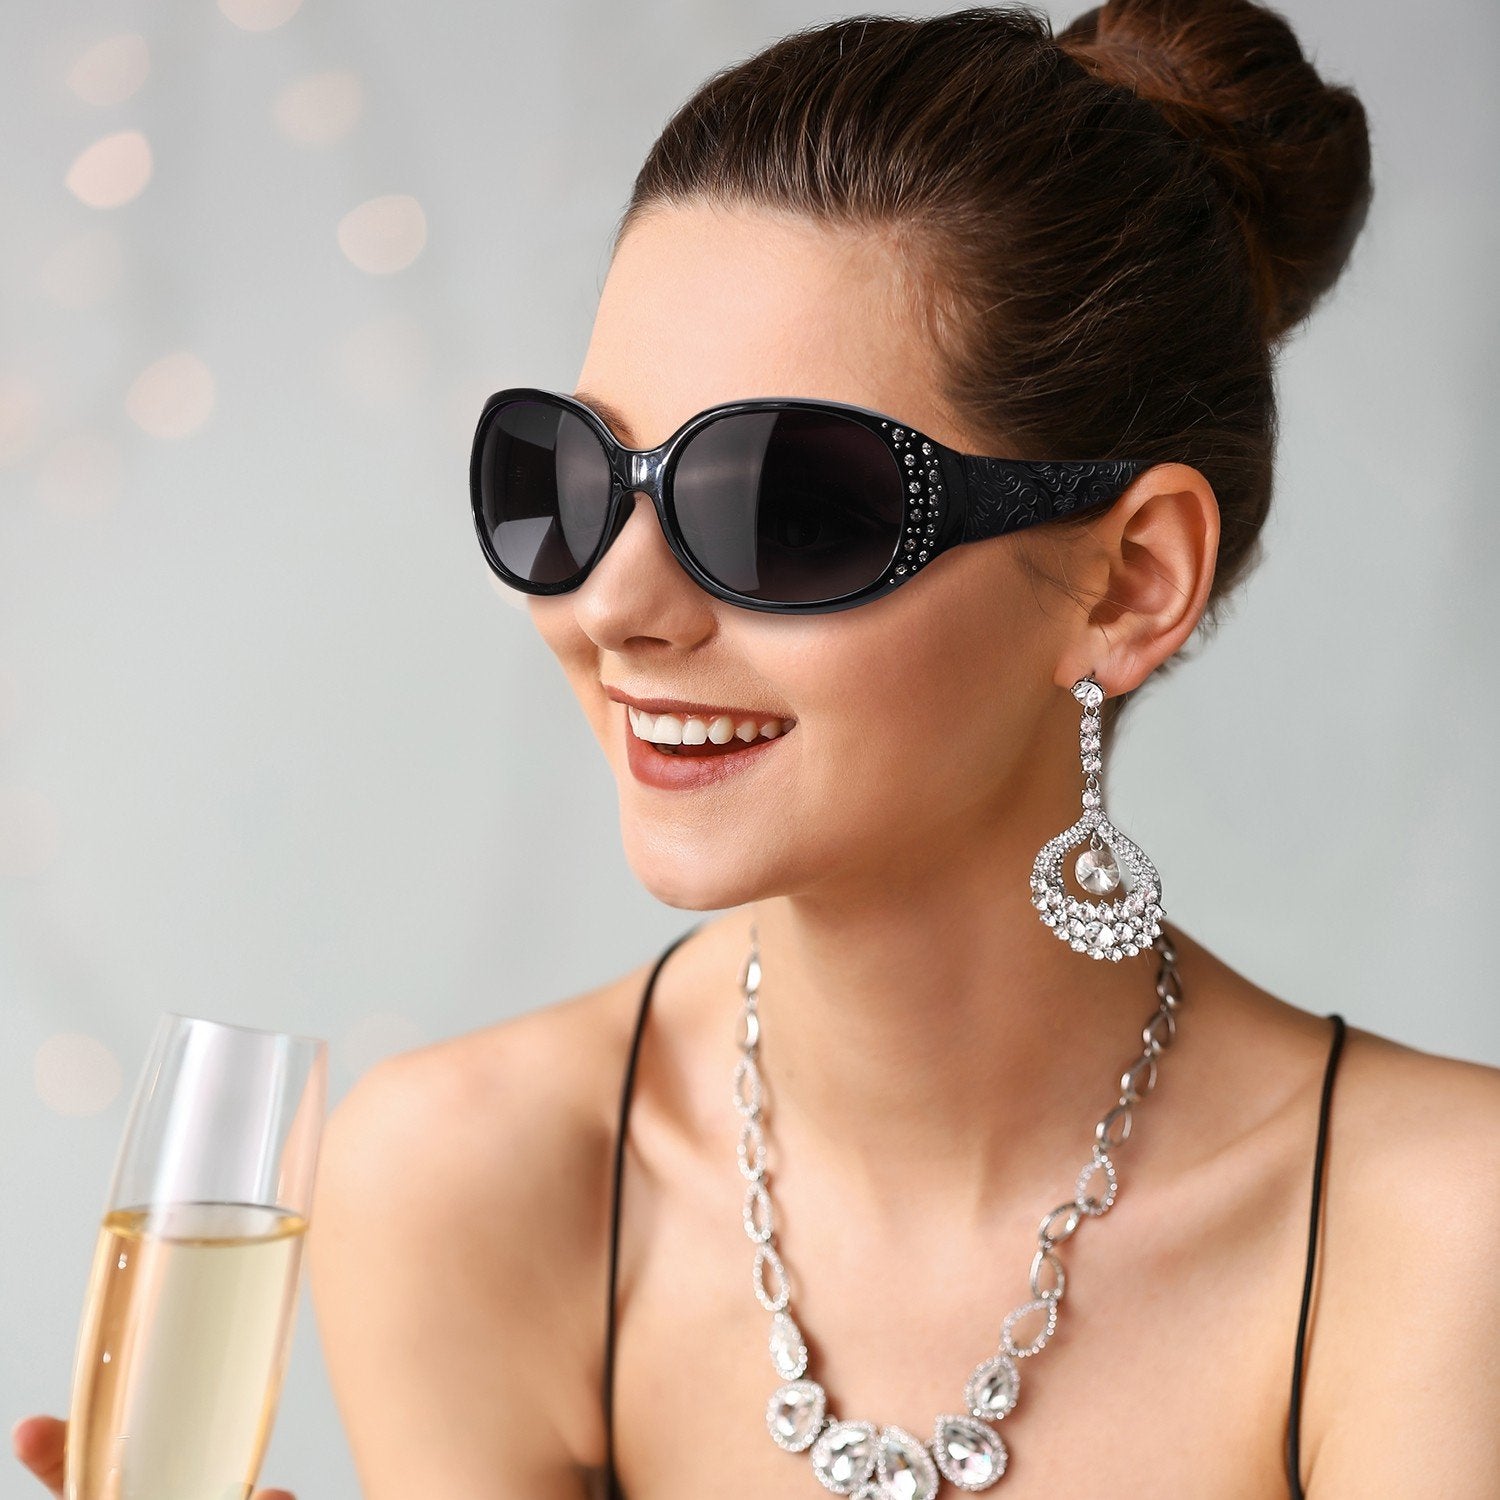 Rx Women-Rhinebeck Sunglasses for Sun LVIOE Prescription Glasses